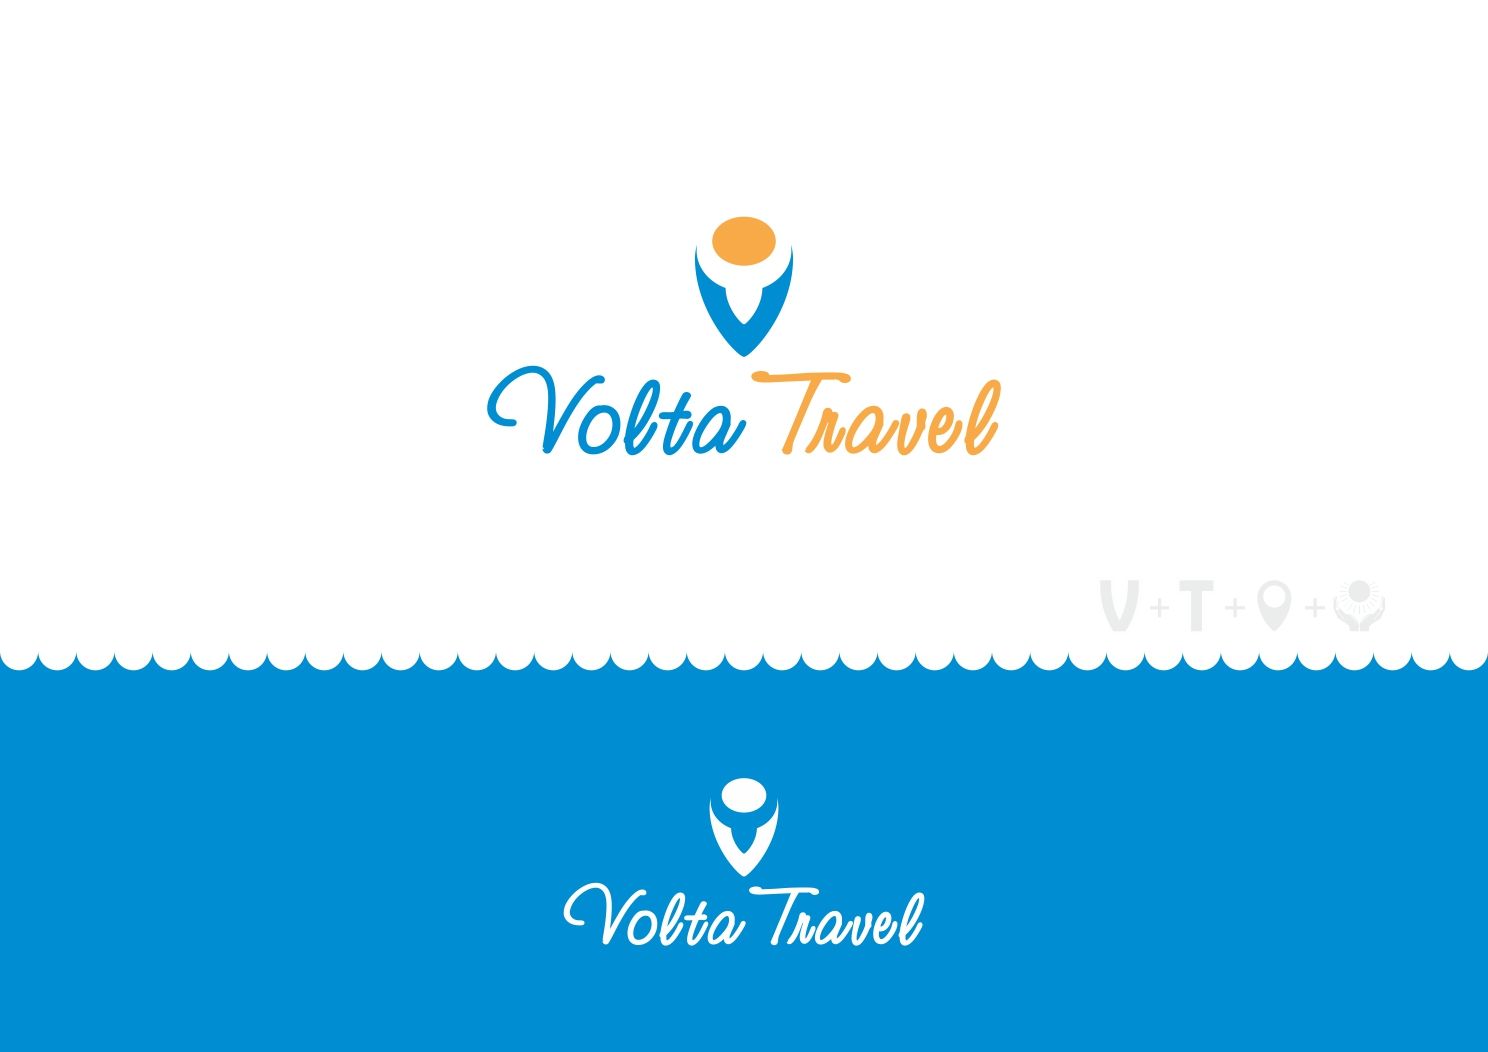 Логотип для Volta Travel - дизайнер ArtAnd